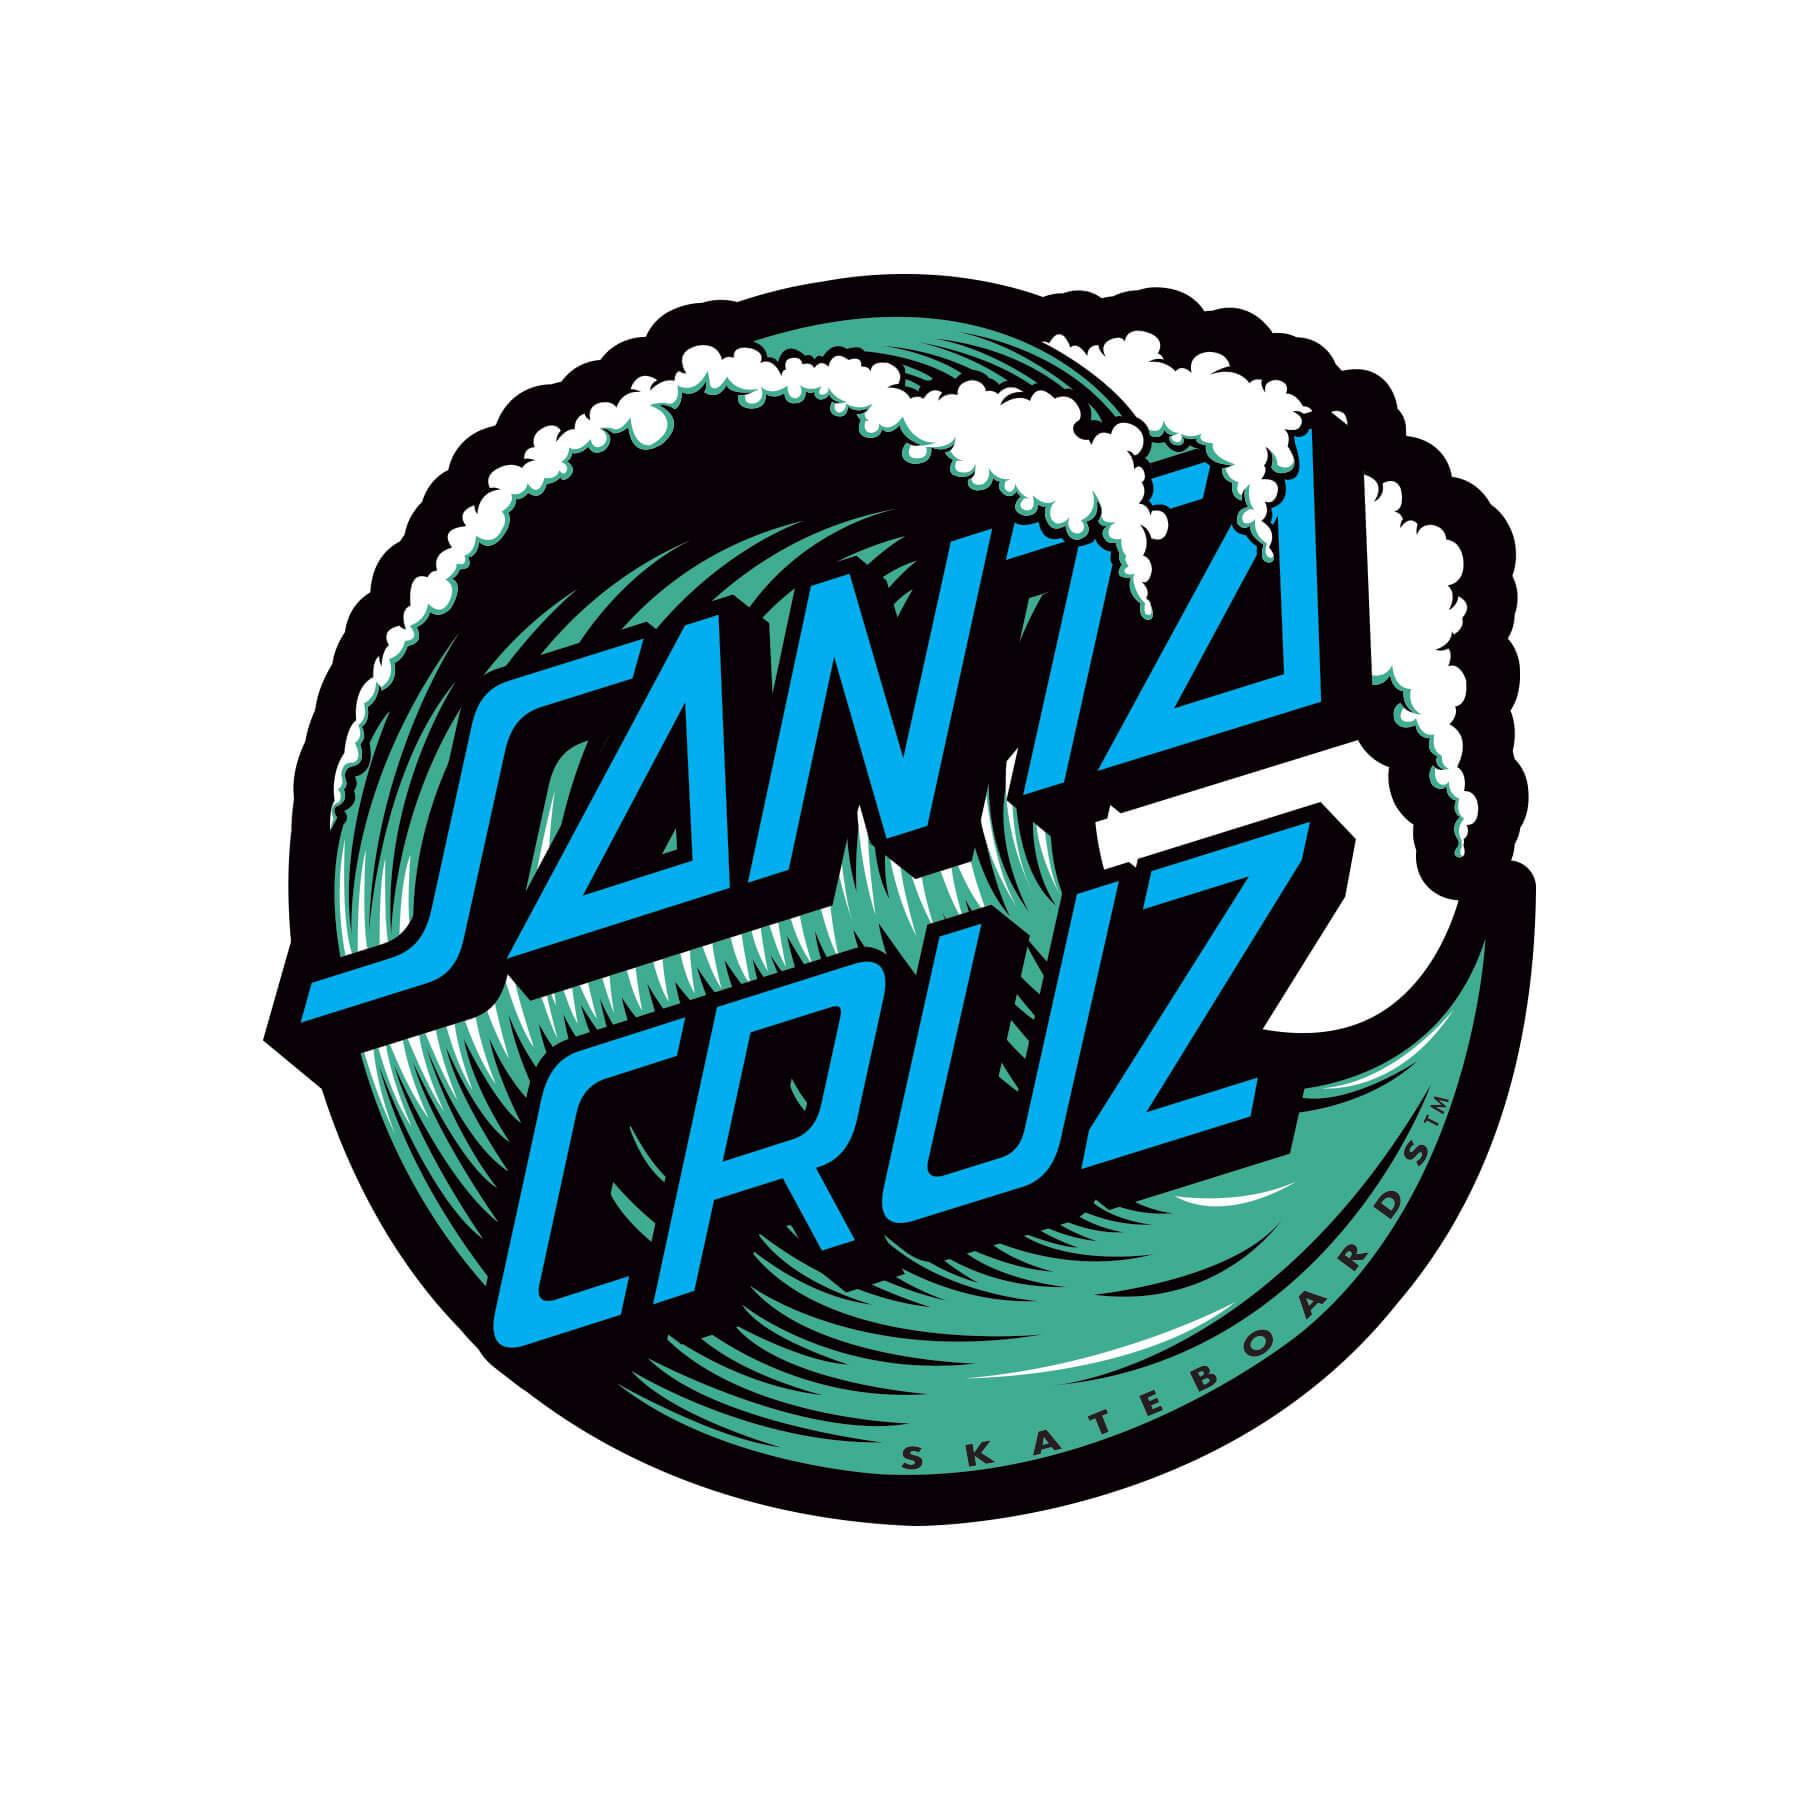 Santa Cruz Blue Logo - Santa cruz Logos